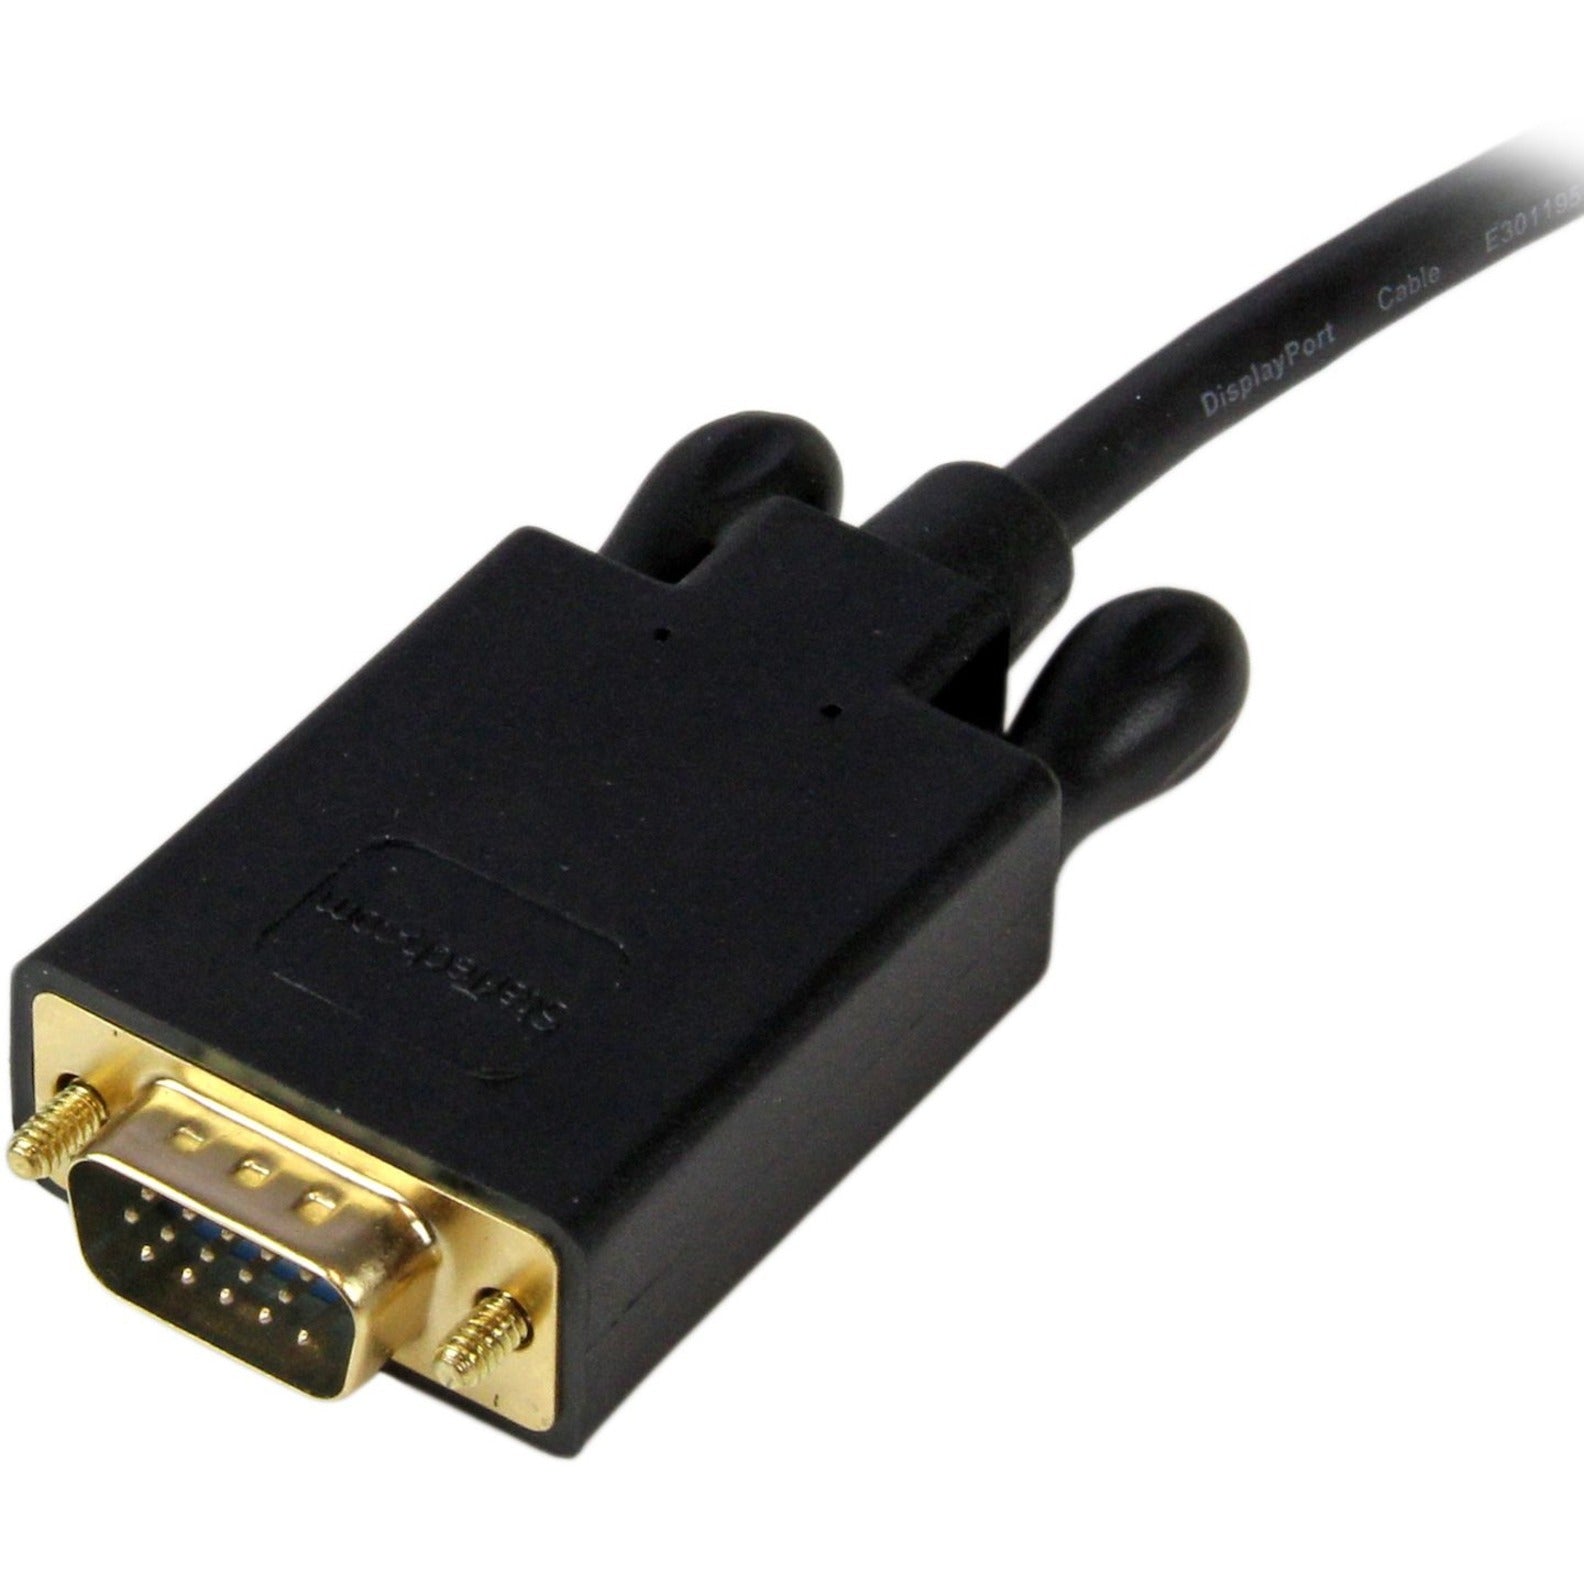 StarTech.com DP2VGAMM15B 15 ft DisplayPort to VGA Adapter Converter Cable 1920x1200 - Schwarz